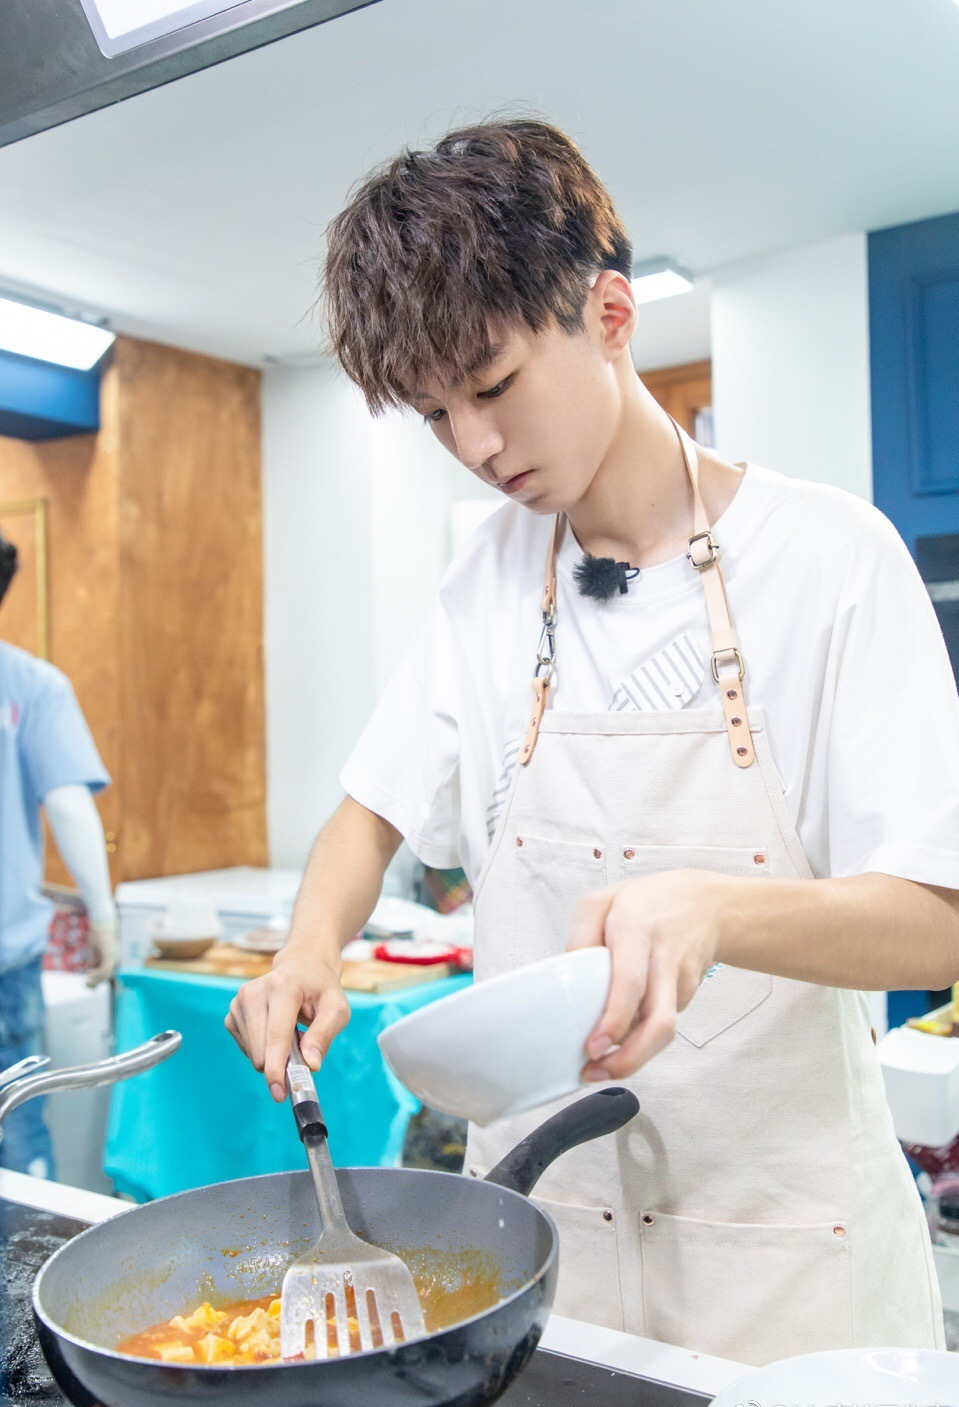 王俊凯穿着白t黑短裤买菜做饭,这样的居家少年凯你喜欢吗?